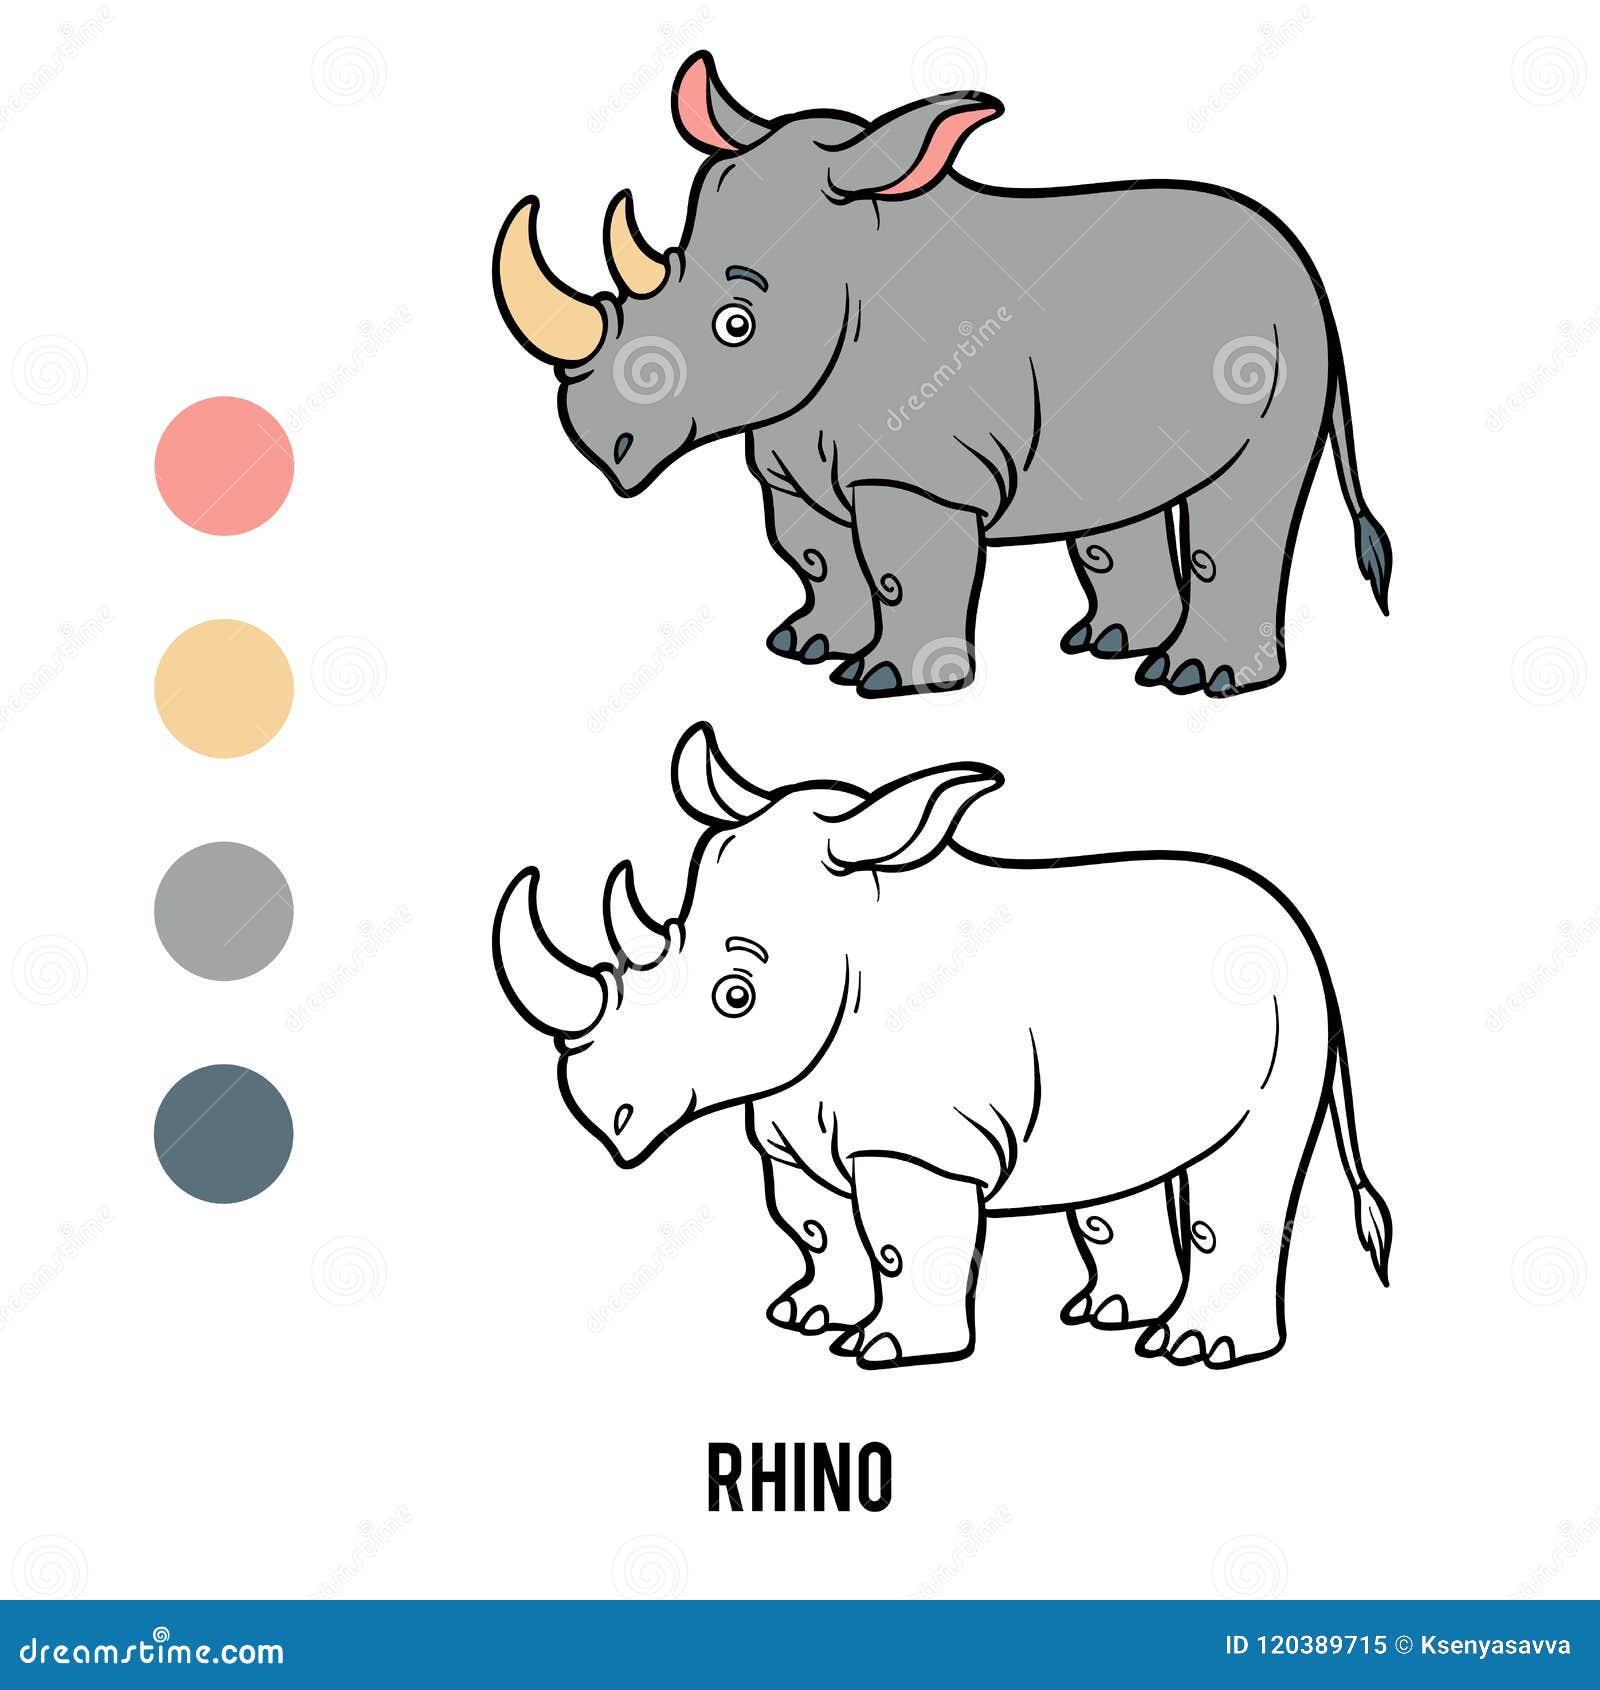 coloring book, rhino